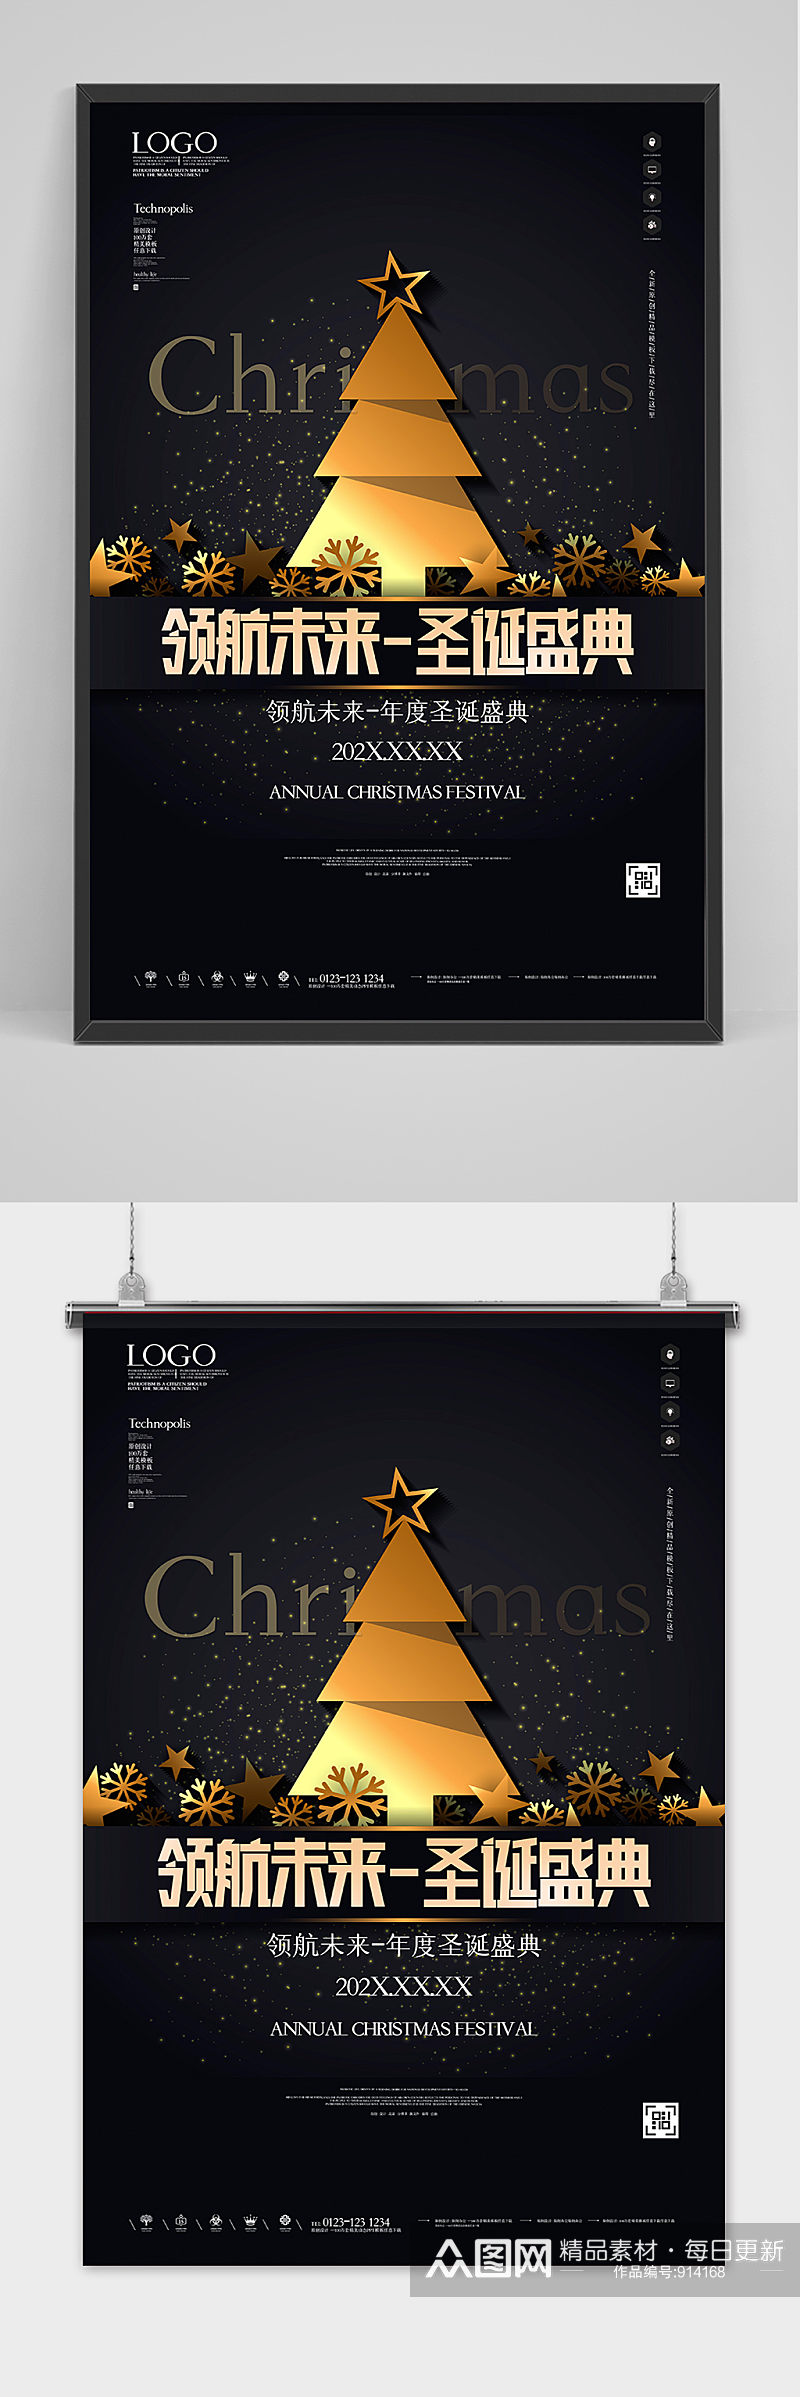 黑金领航未来年度圣诞海报设计素材